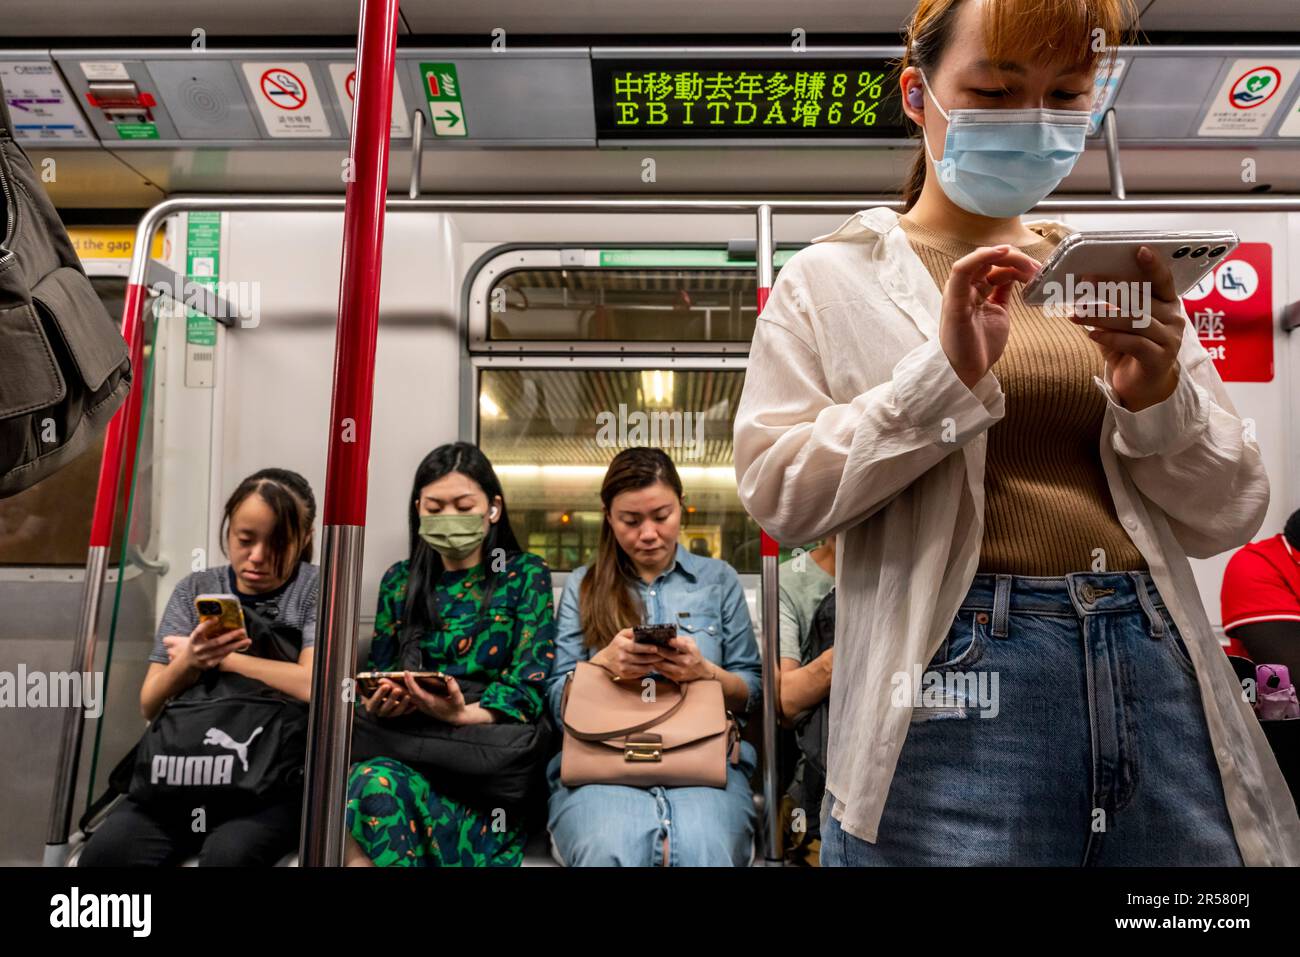 Menschen, die ihre Smartphones in Einem MTR-Zug, Hongkong, China, verwenden. Stockfoto